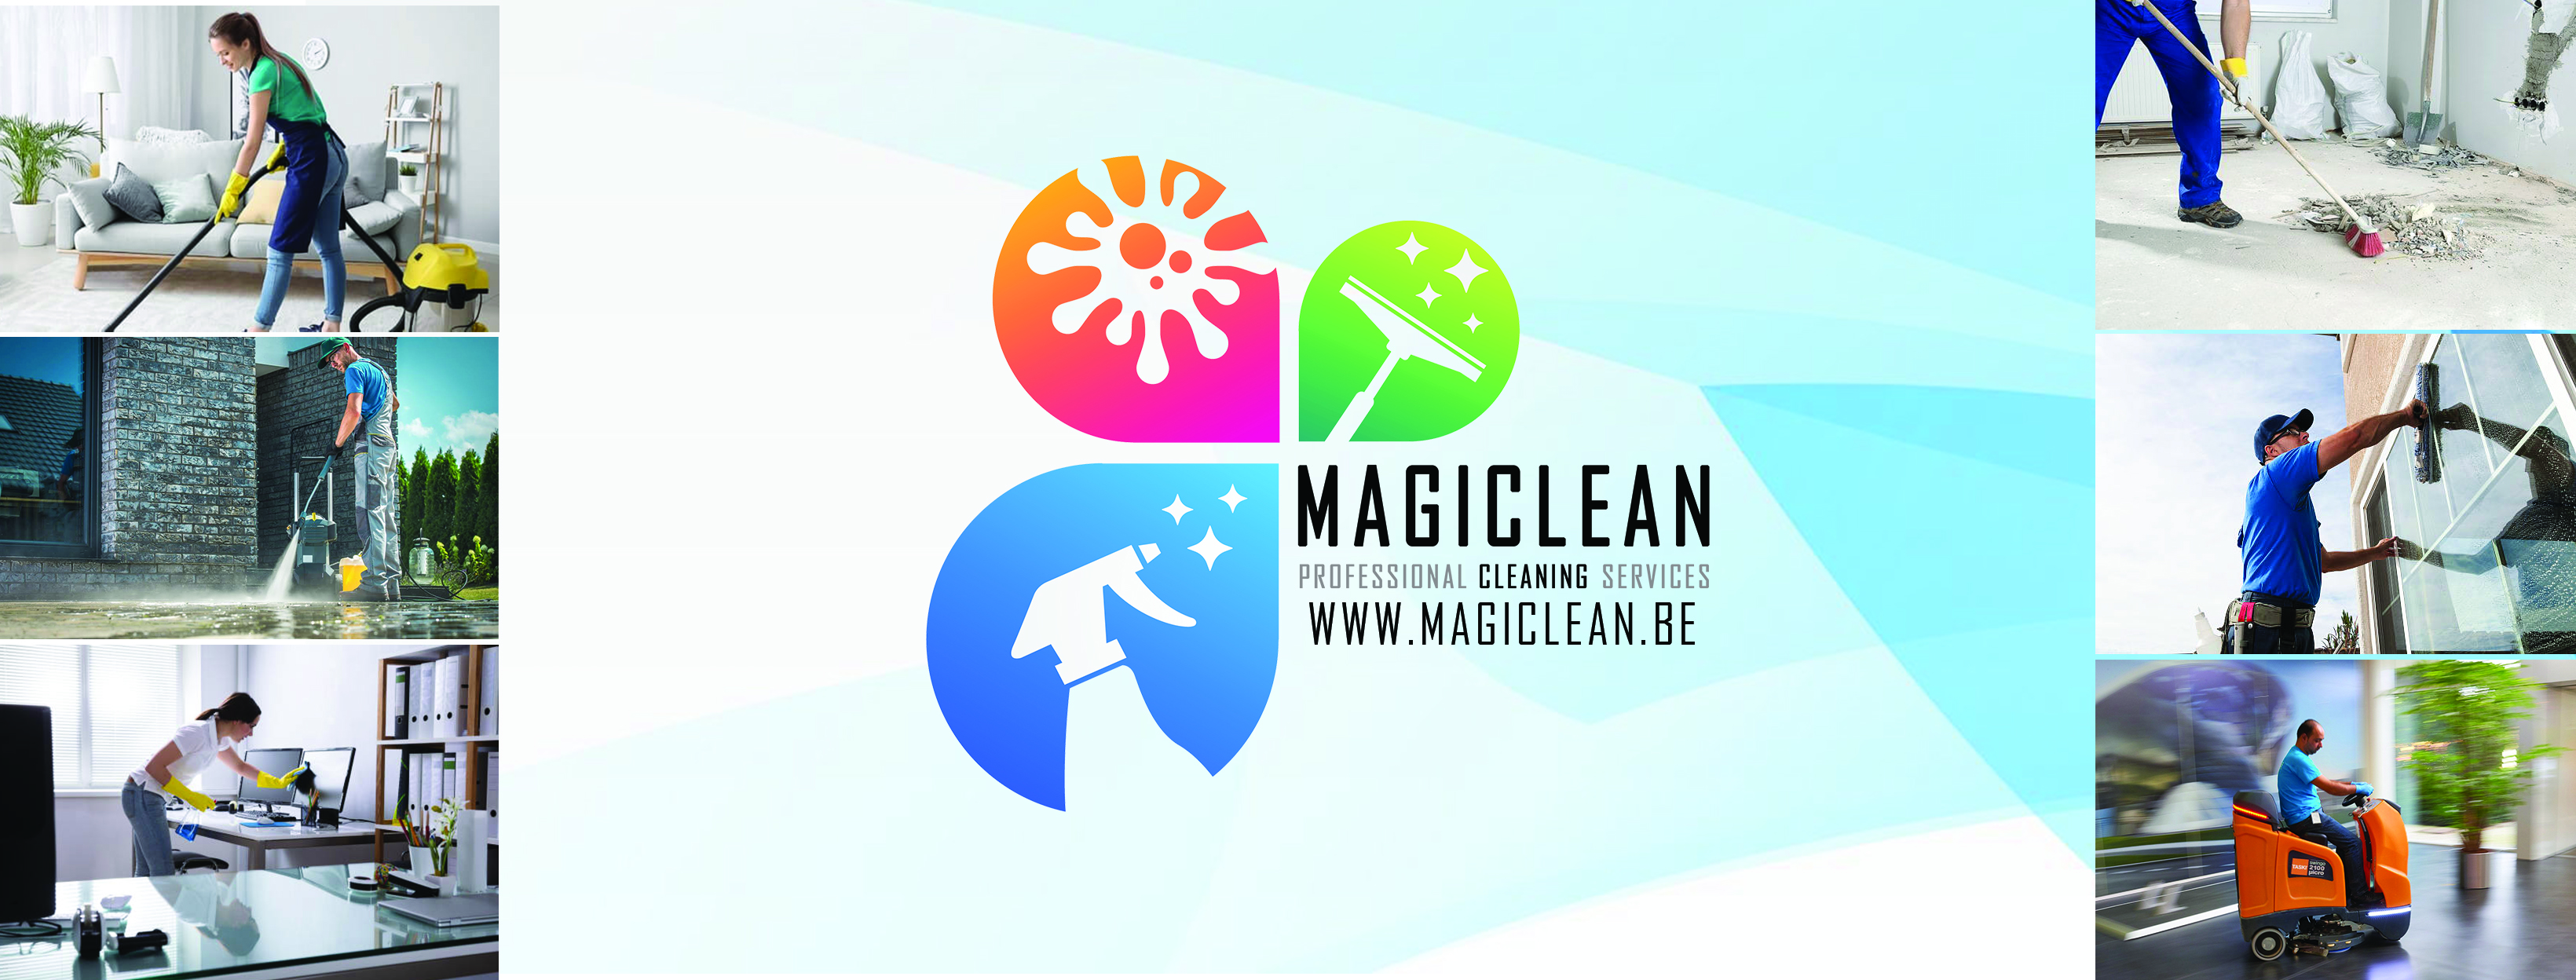 schoonmaakbedrijven Antwerpen Magiclean - Professional Cleaning Services